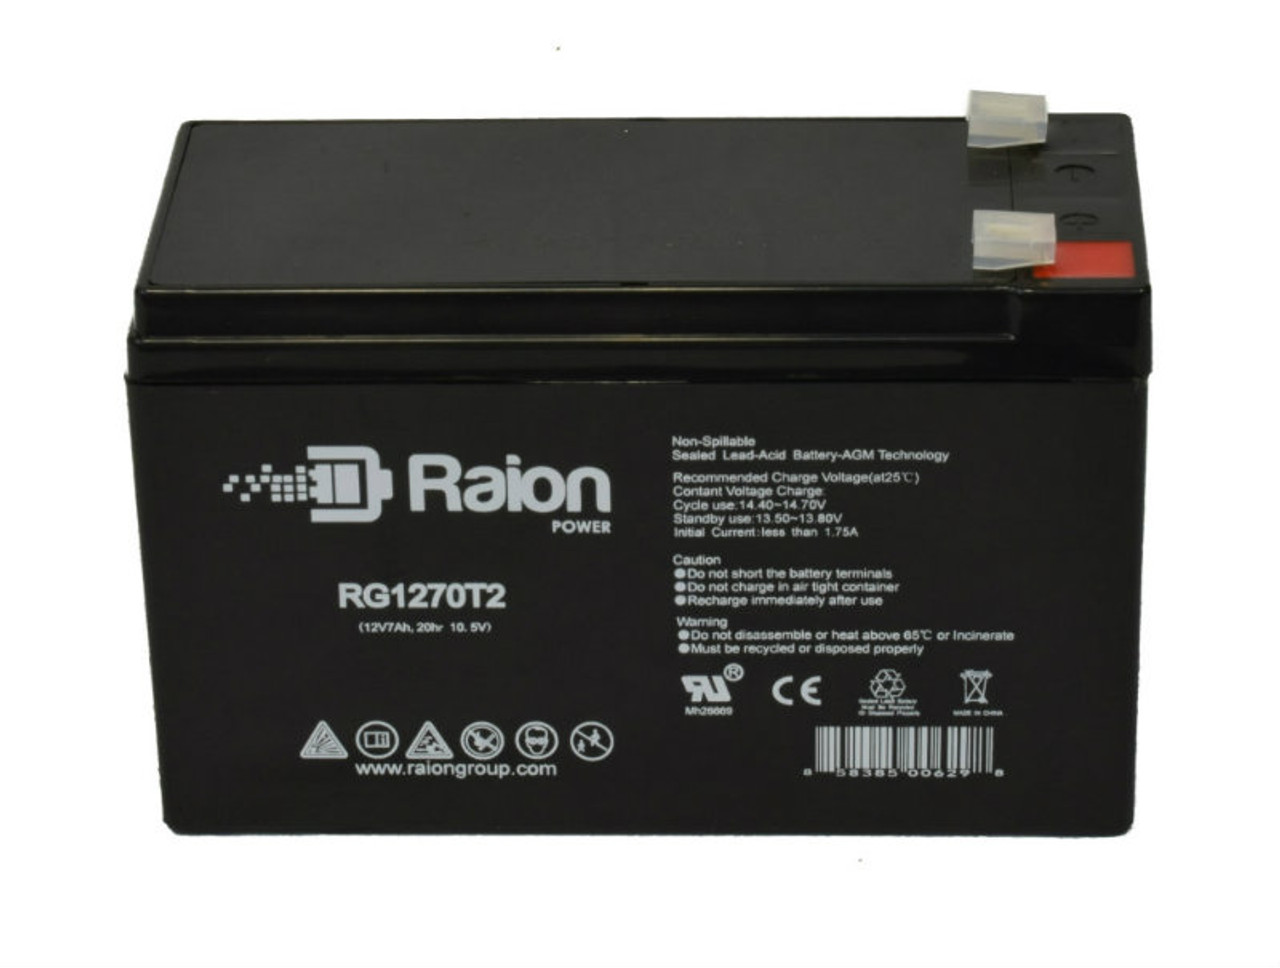 Raion Power RG1270T1 12V 7Ah Lead Acid Battery for FengSheng FS12-7.5